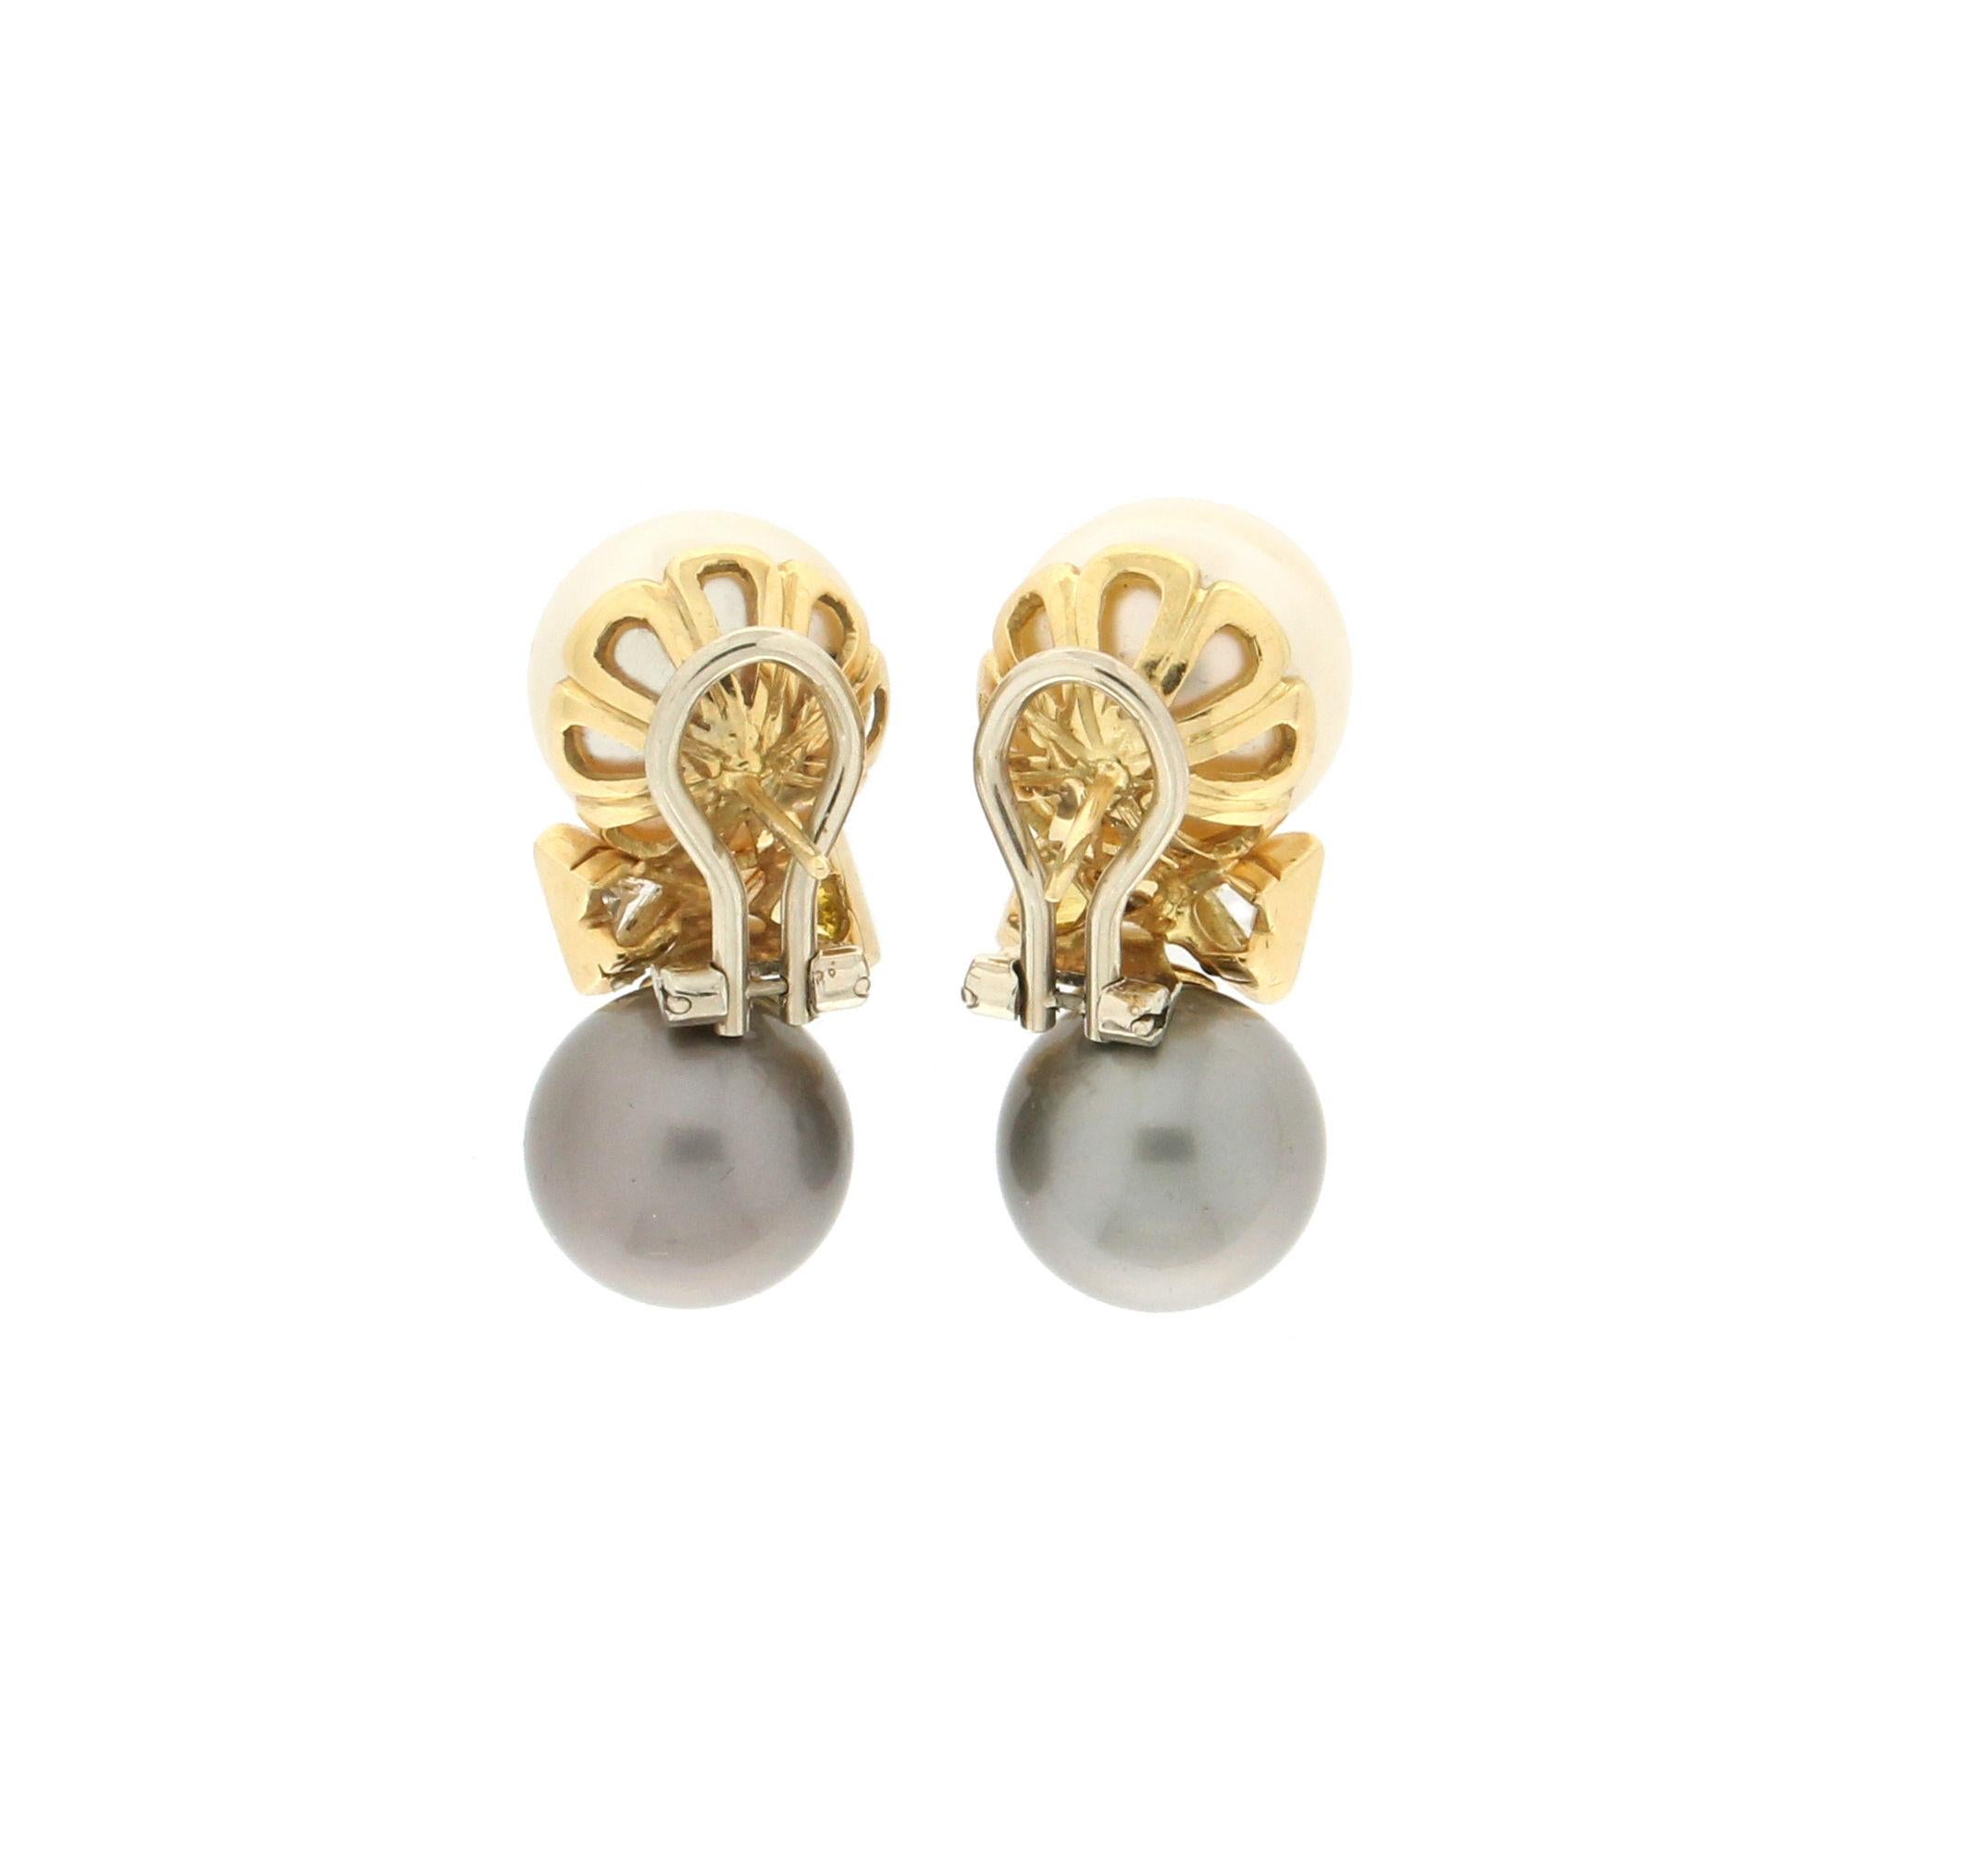 Mixed Cut Handcraft Australian Pearls 18 Karat Yellow Gold Fancy Diamonds Stud Earrings For Sale